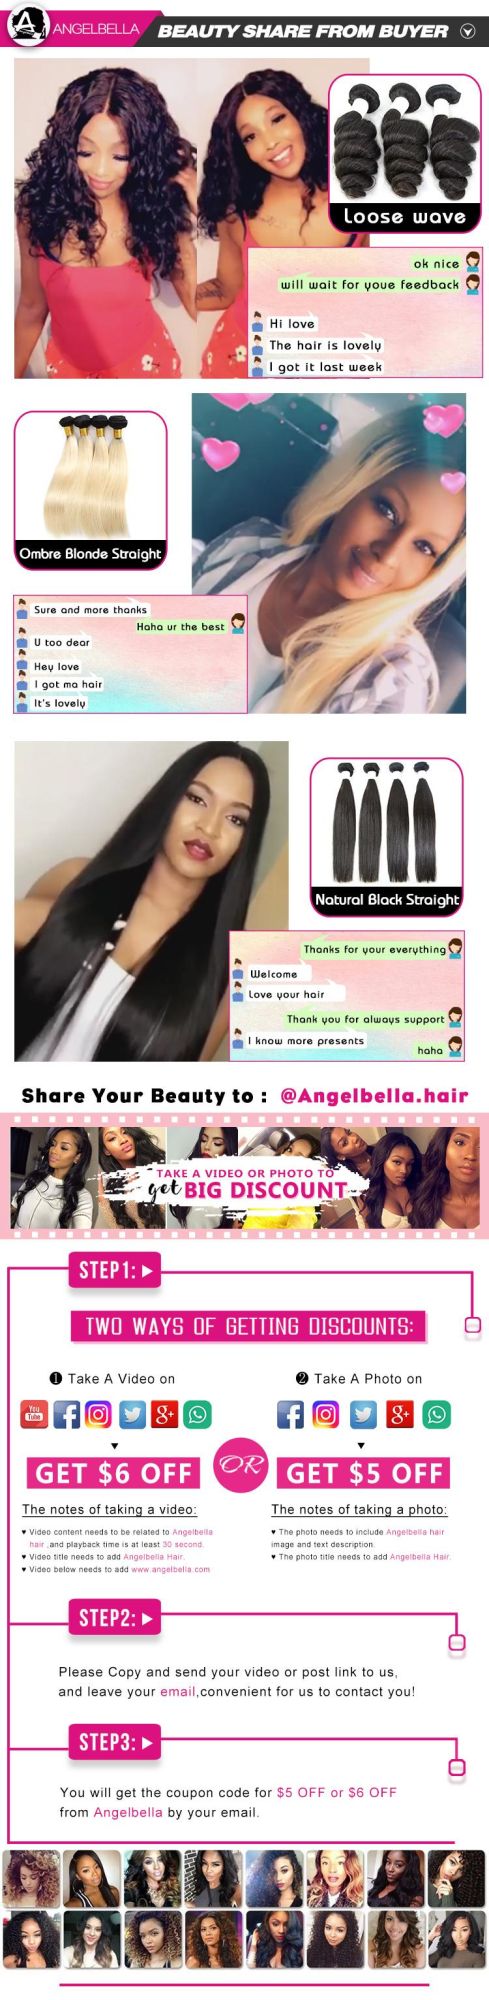 Angelbella Cuticle Aligned Virgin Hair Cheap Price High Quality Peruvian Human Hair Bundles